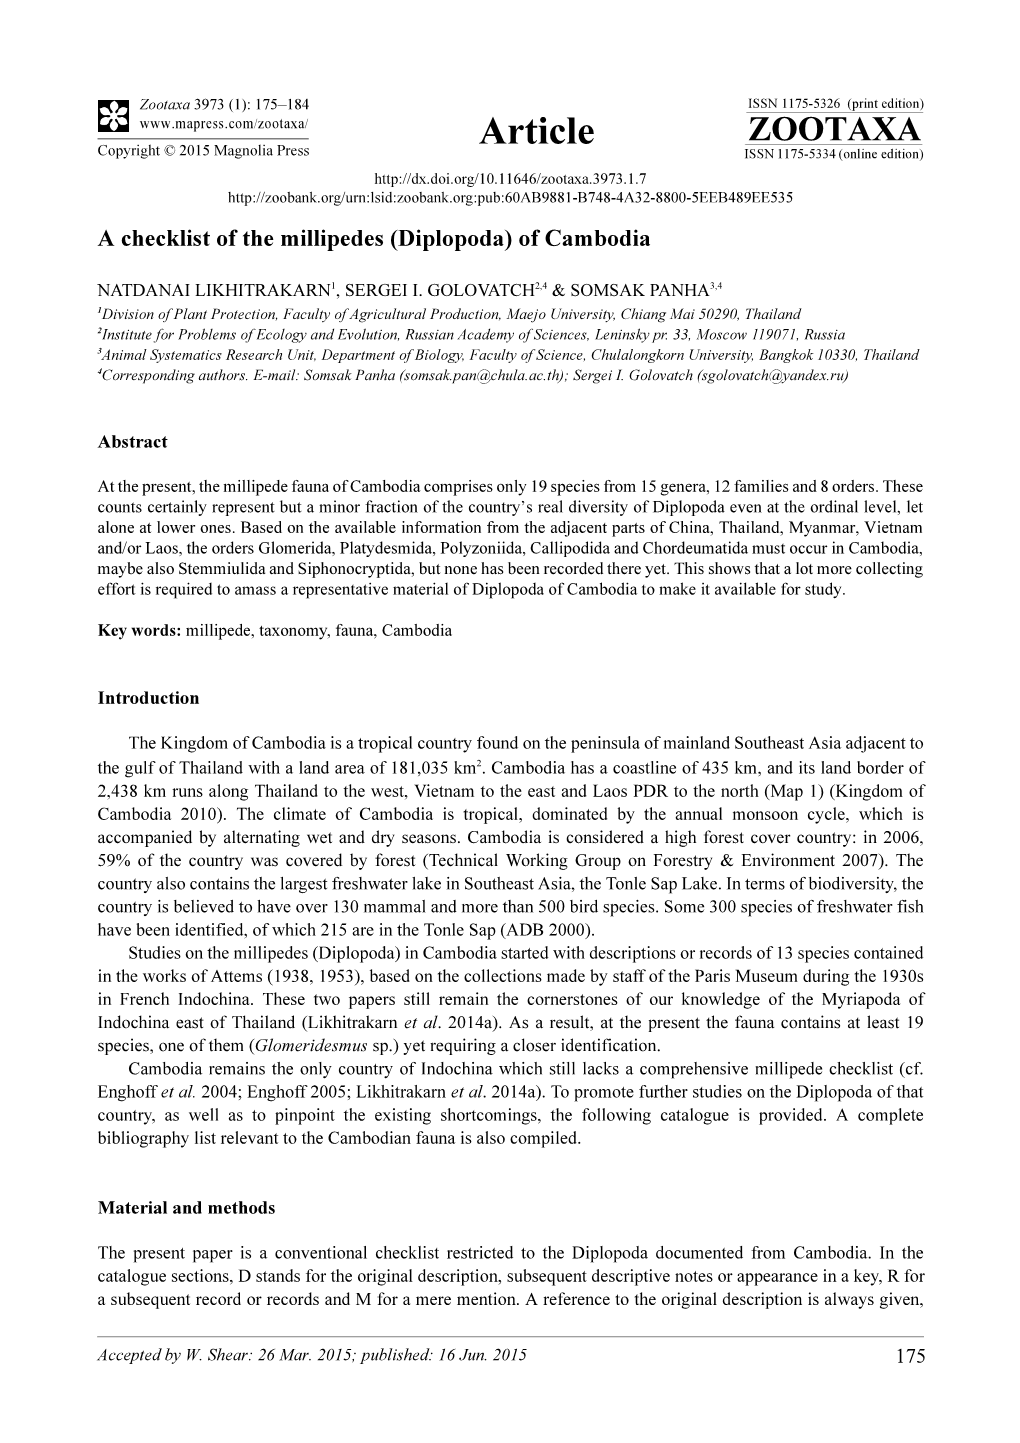 A Checklist of the Millipedes (Diplopoda) of Cambodia